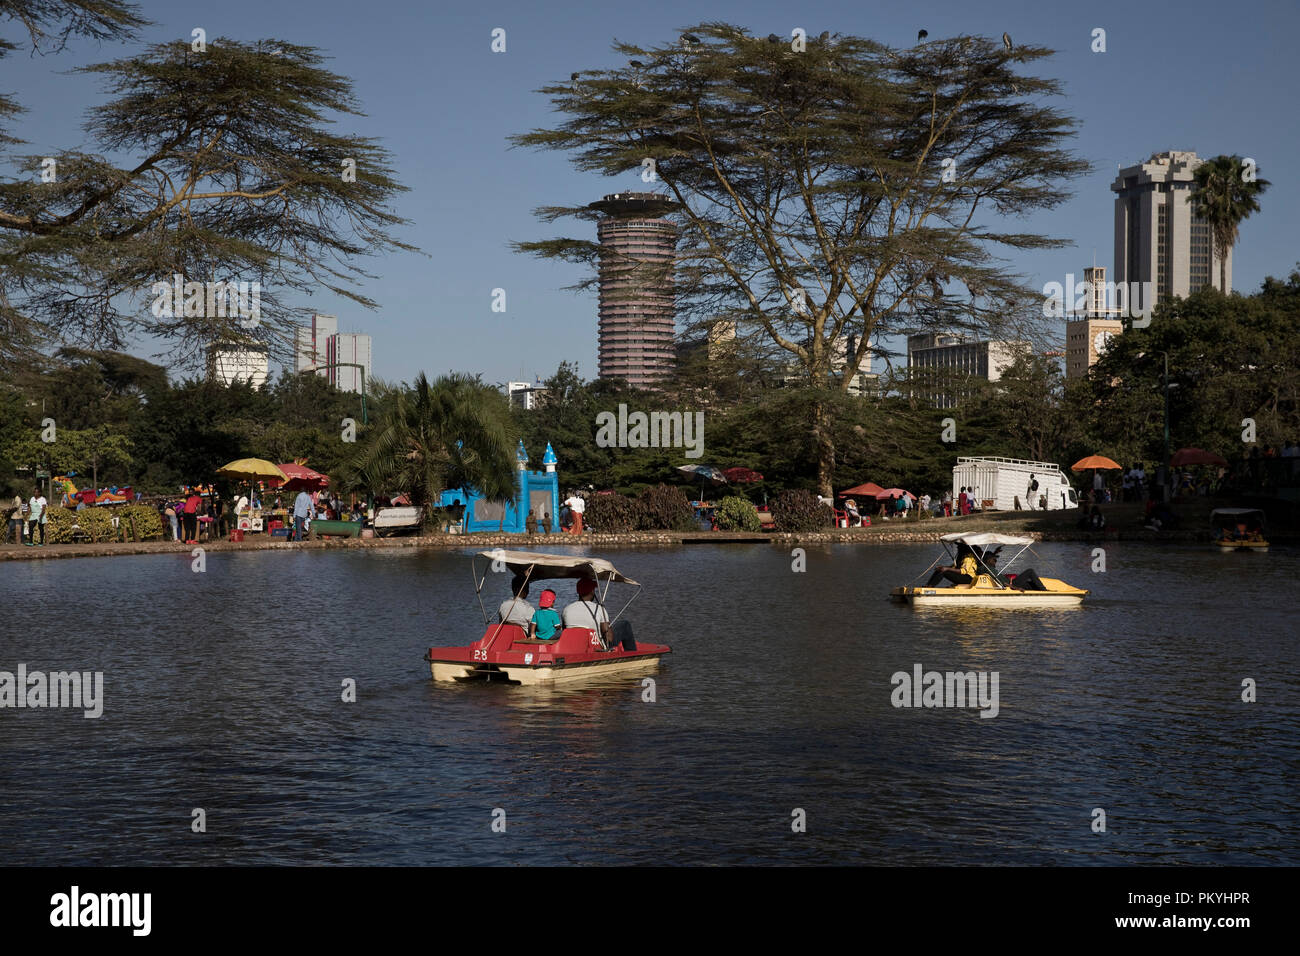 Nairobi city, January 21, 2018. Stock Photo